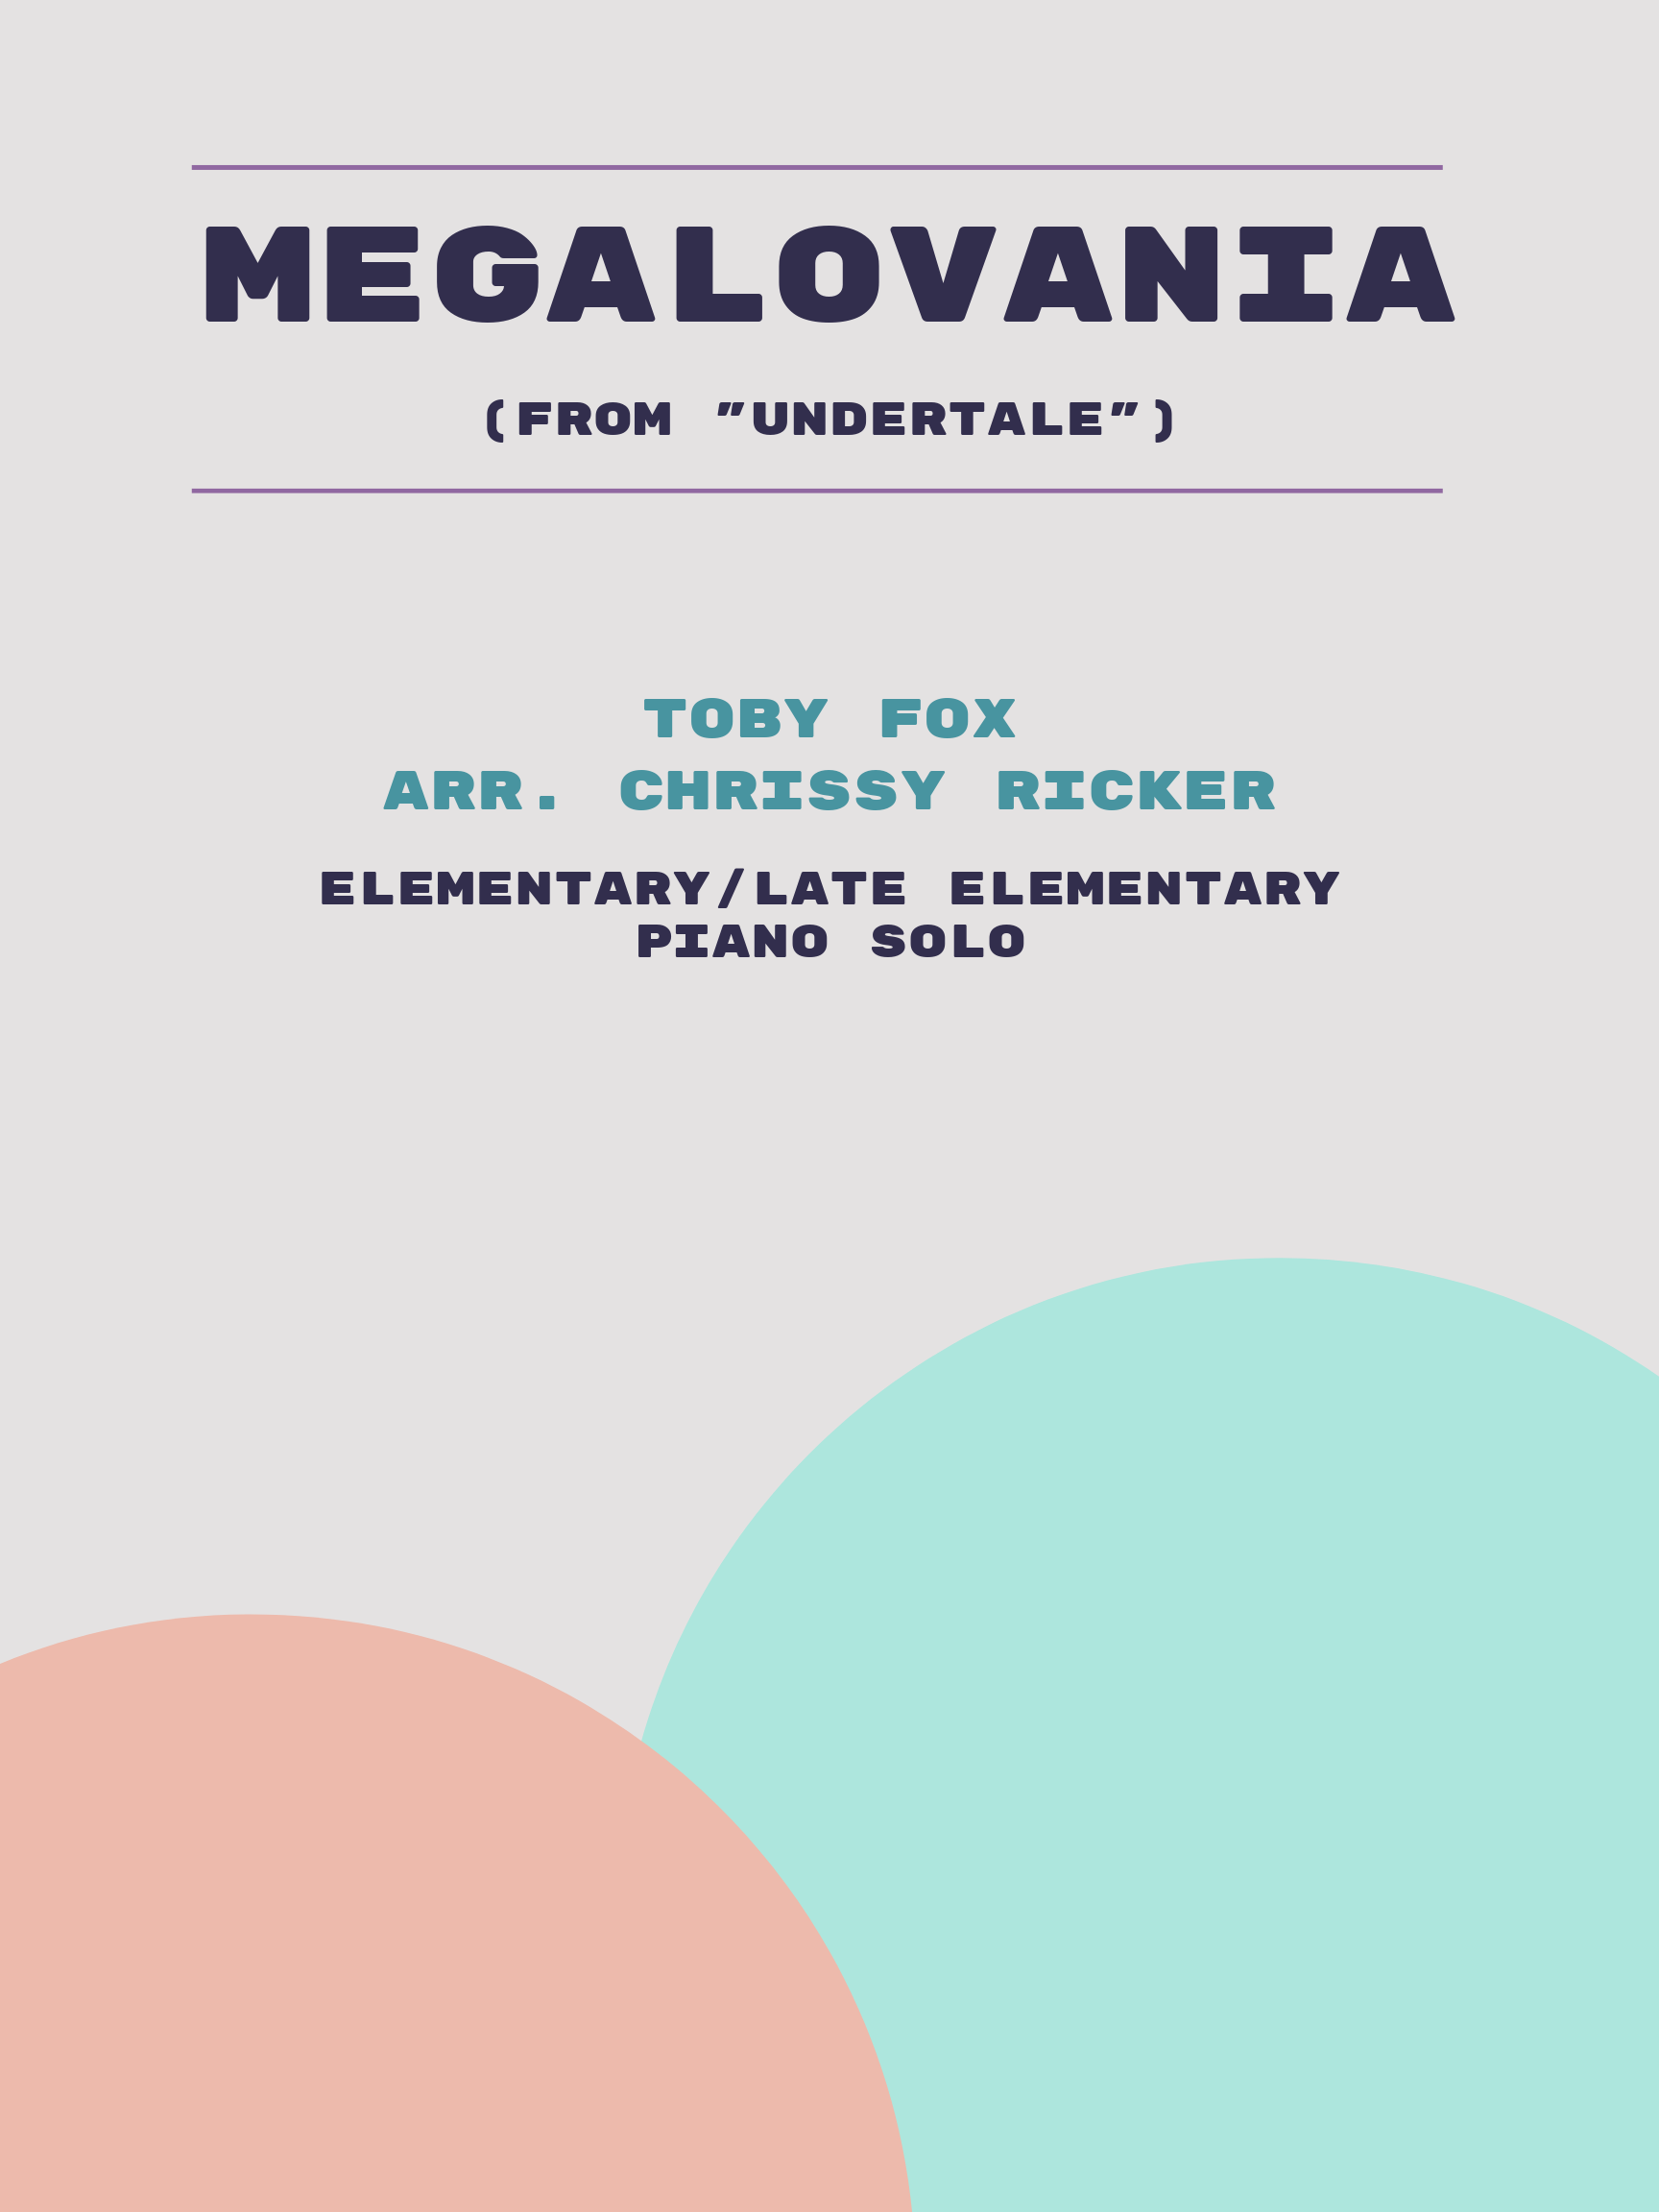 Megalovania by Toby Fox